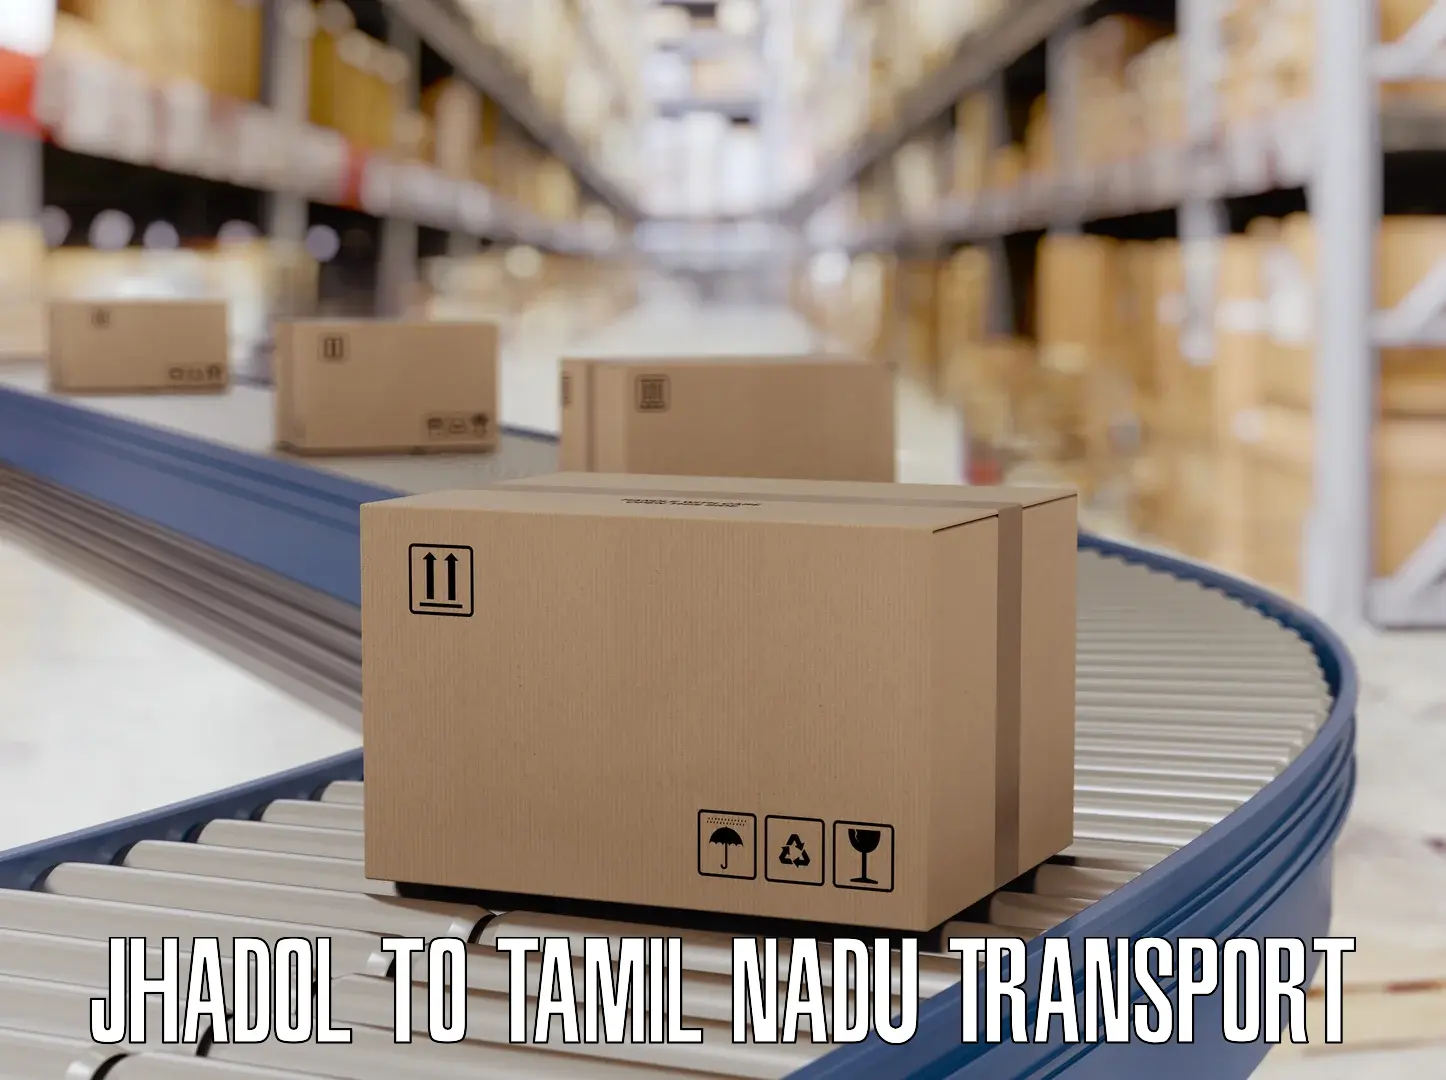 Furniture transport service Jhadol to Tamil Nadu